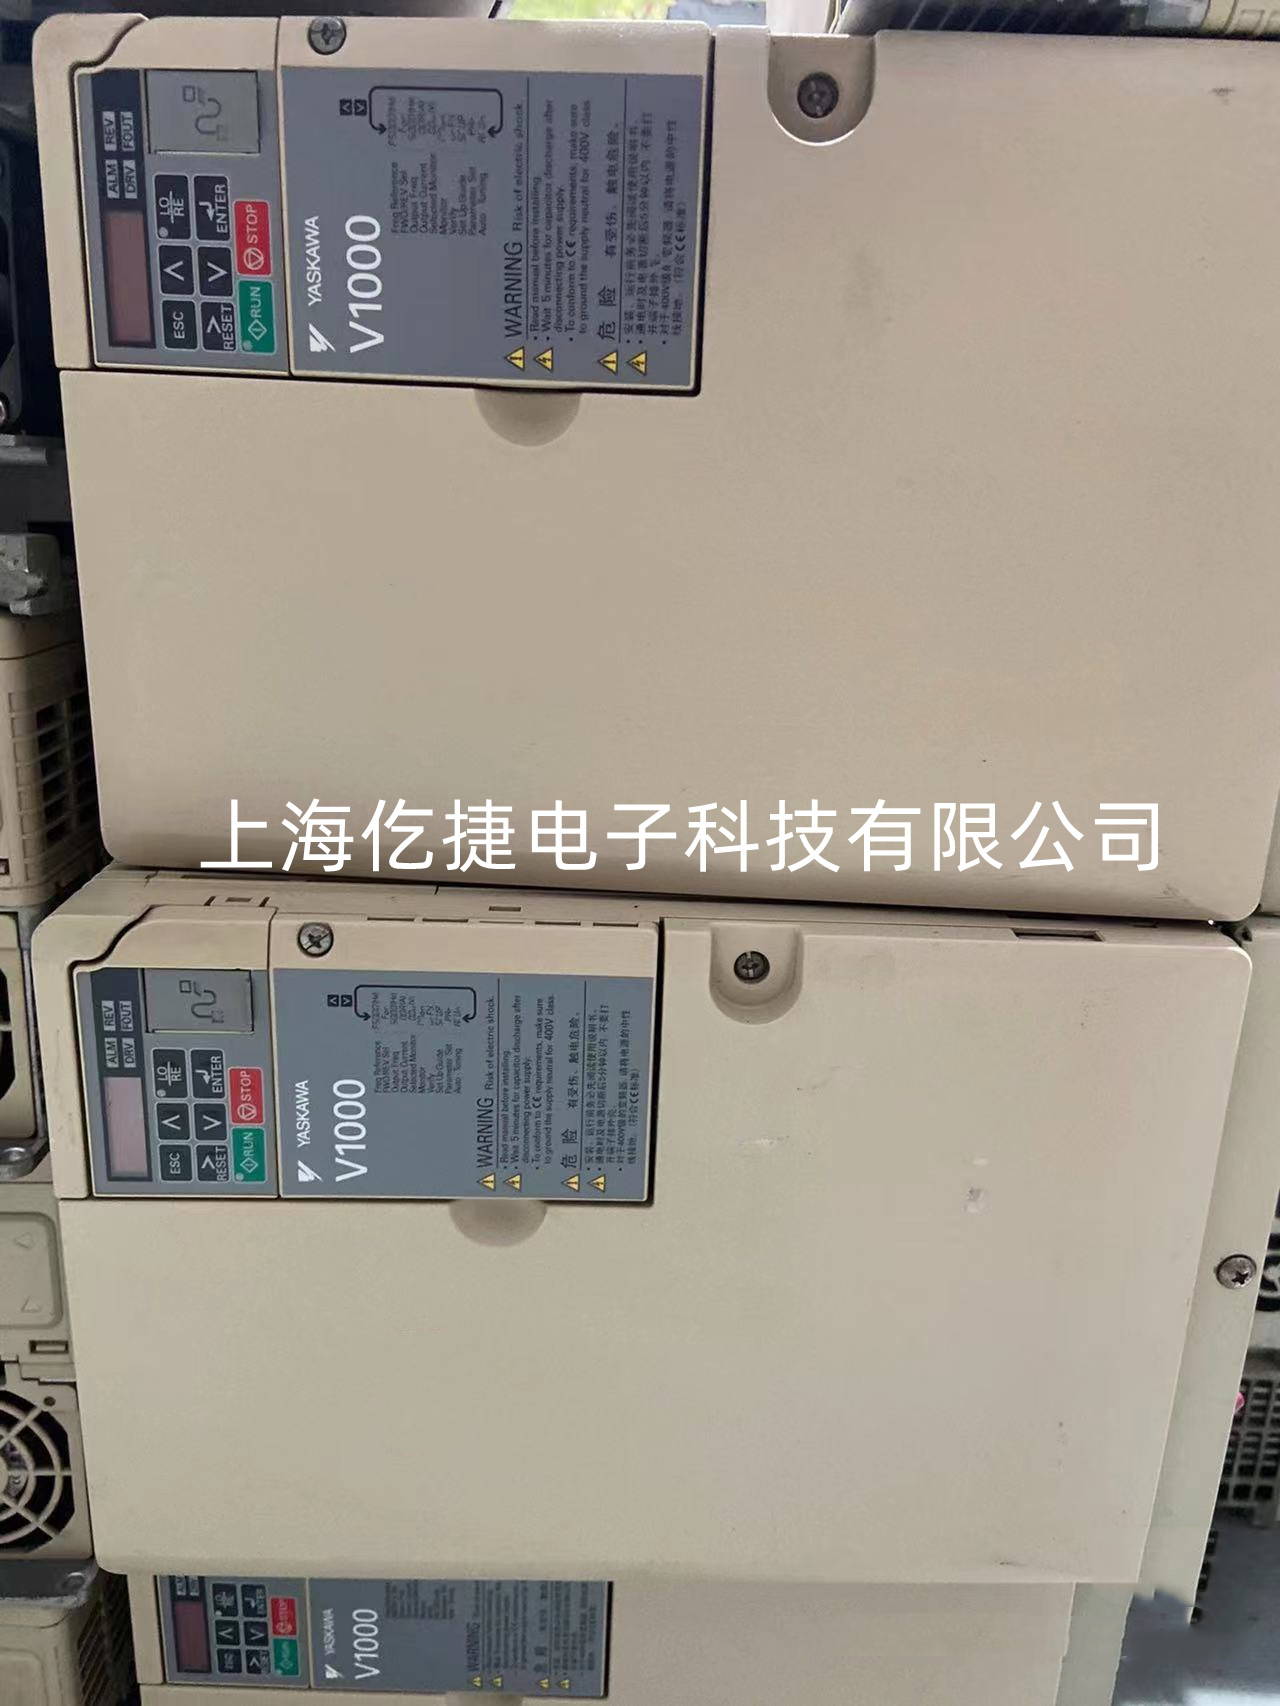 萍乡AB罗克韦尔变频器753系列故障维修报警F11